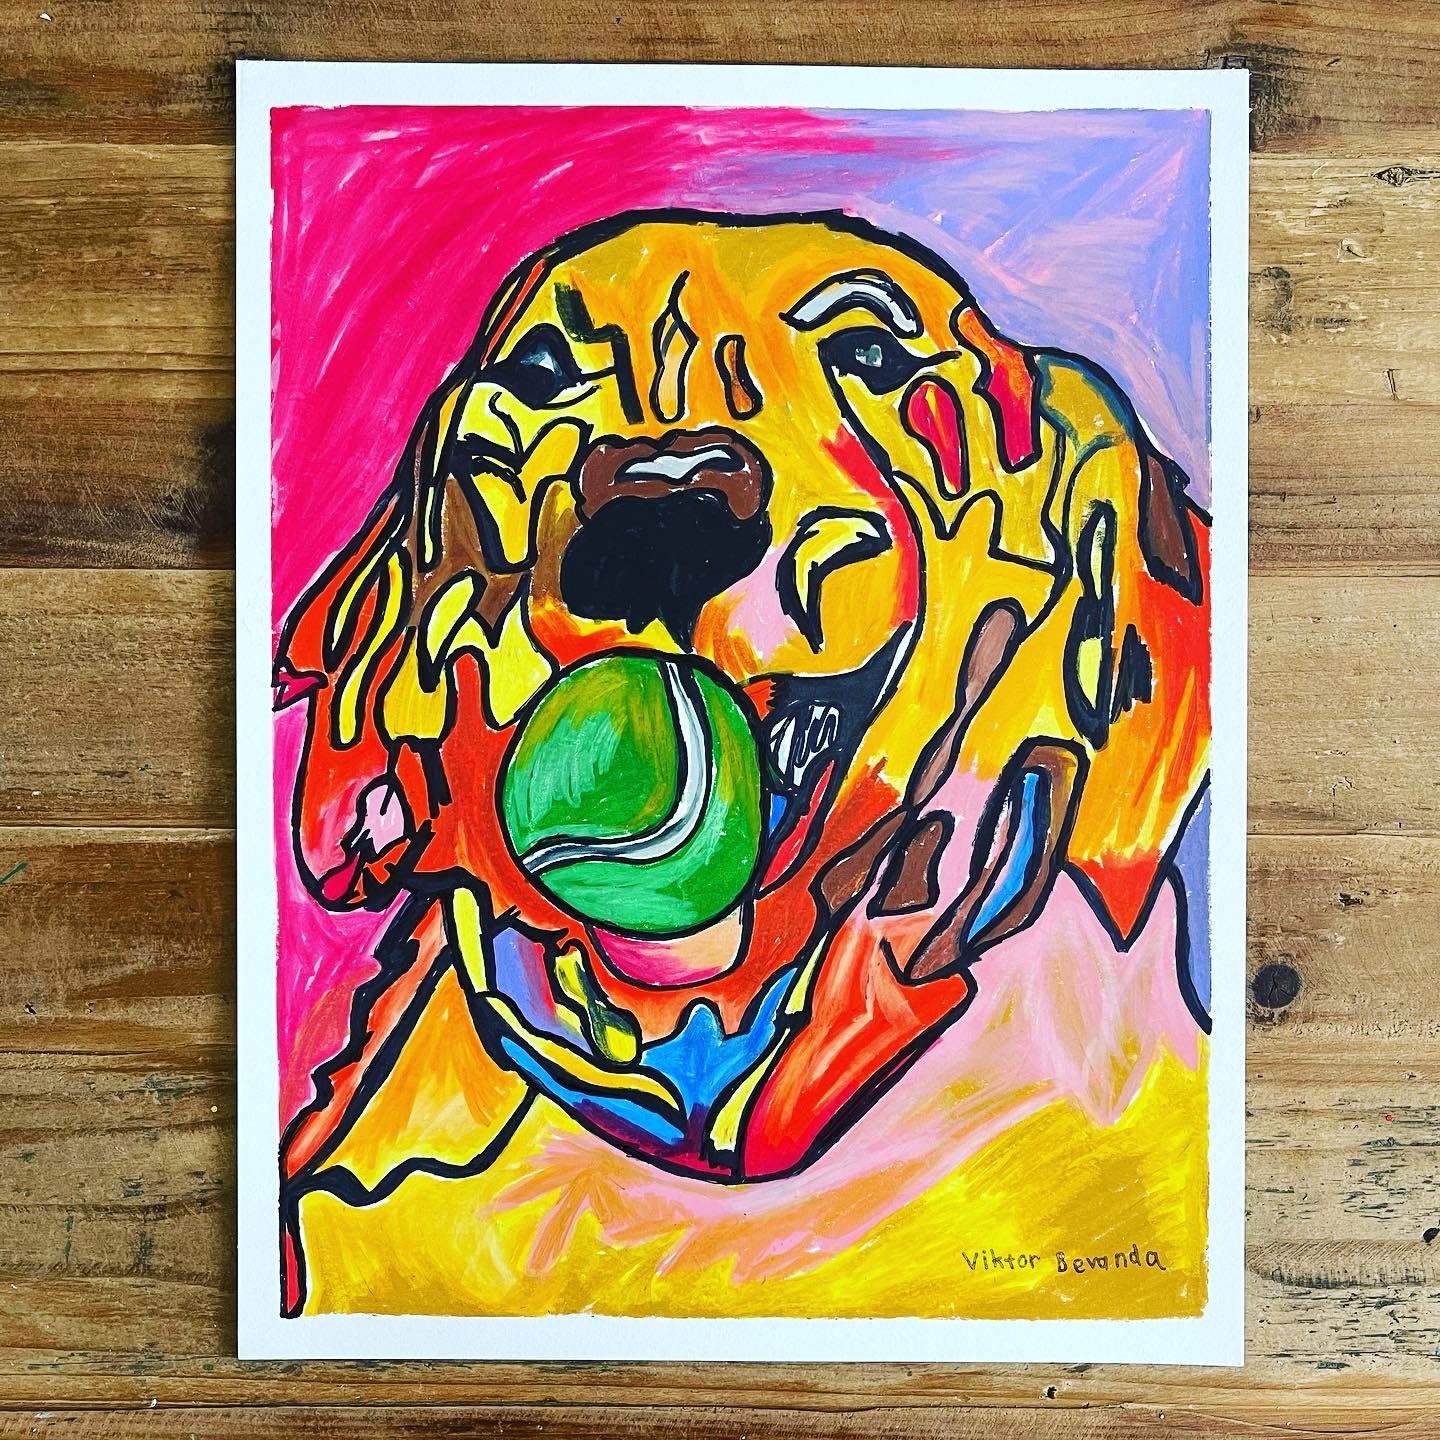 Golden Retriever with a Tennis Ball - fine prints of original artwork